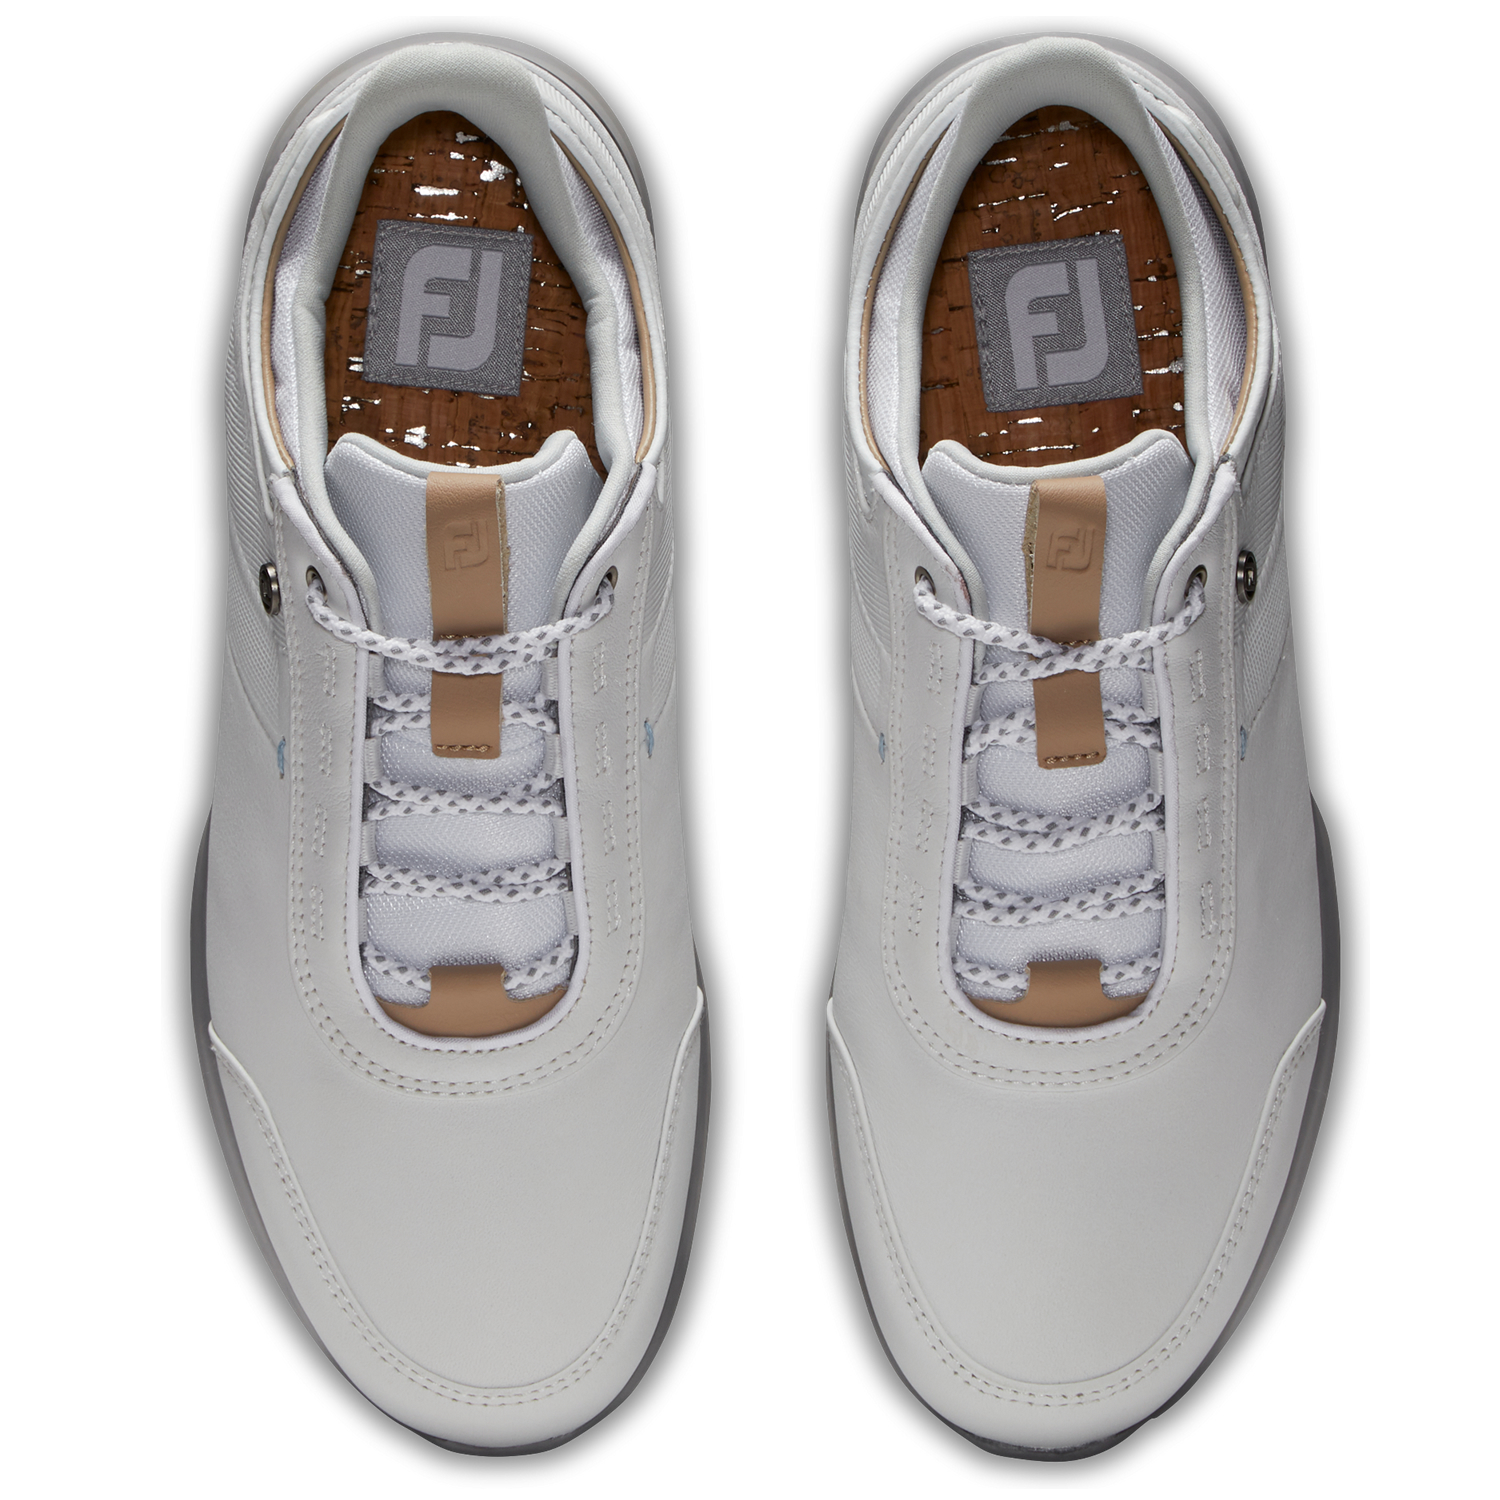 FootJoy FJ Stratos Ladies Golf Shoes #90111 White/Grey | Scottsdale Golf